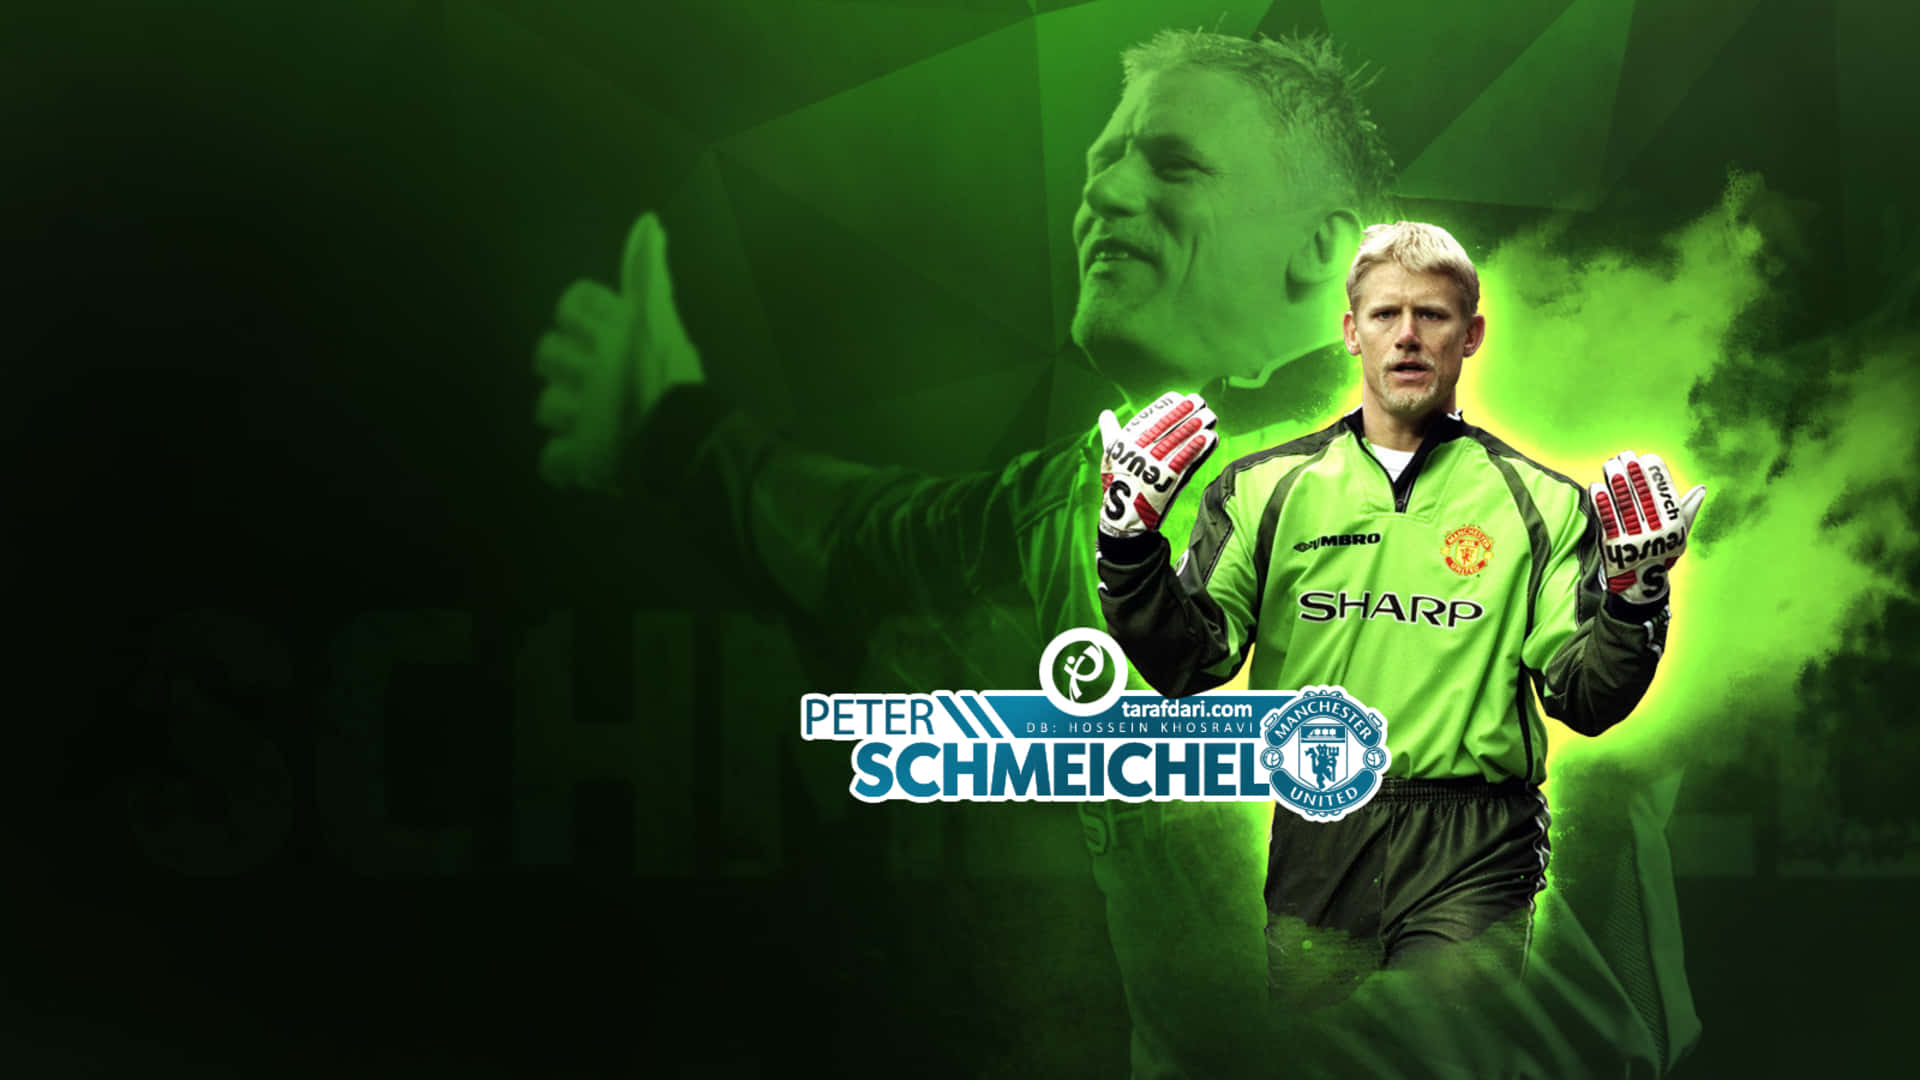 Peter Schmeichel Green Graphic Art Goalkeeper Manchester United Wallpaper